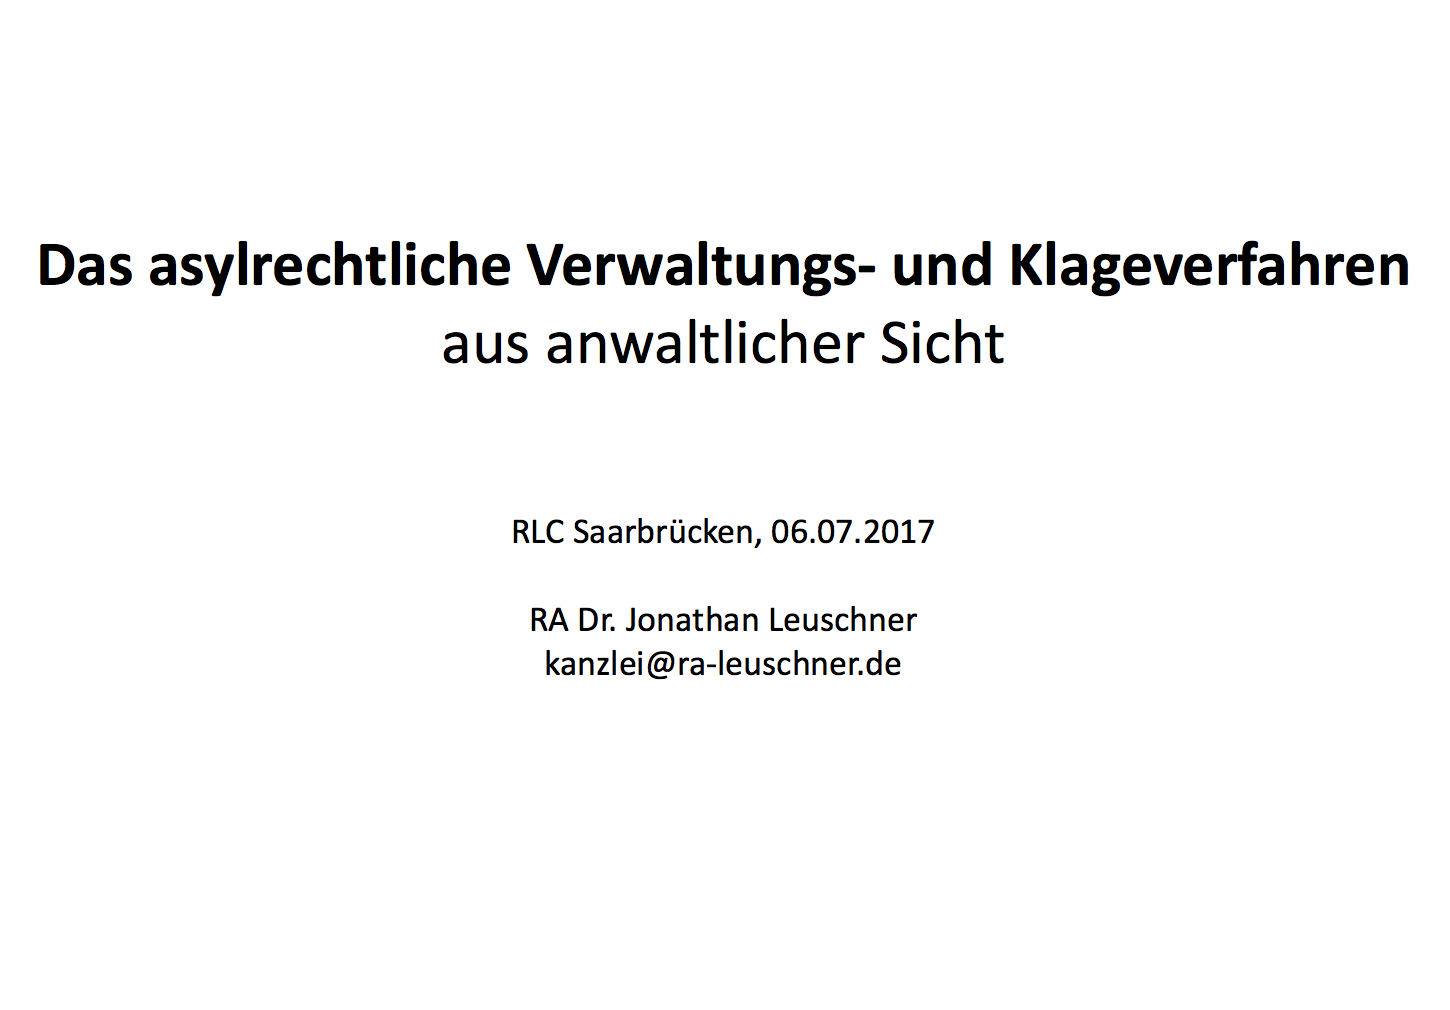 Folien zur Veranstaltung mit Dr. Leuschner „Das asylrechtliche Verwaltungs- und Klageverfahren“